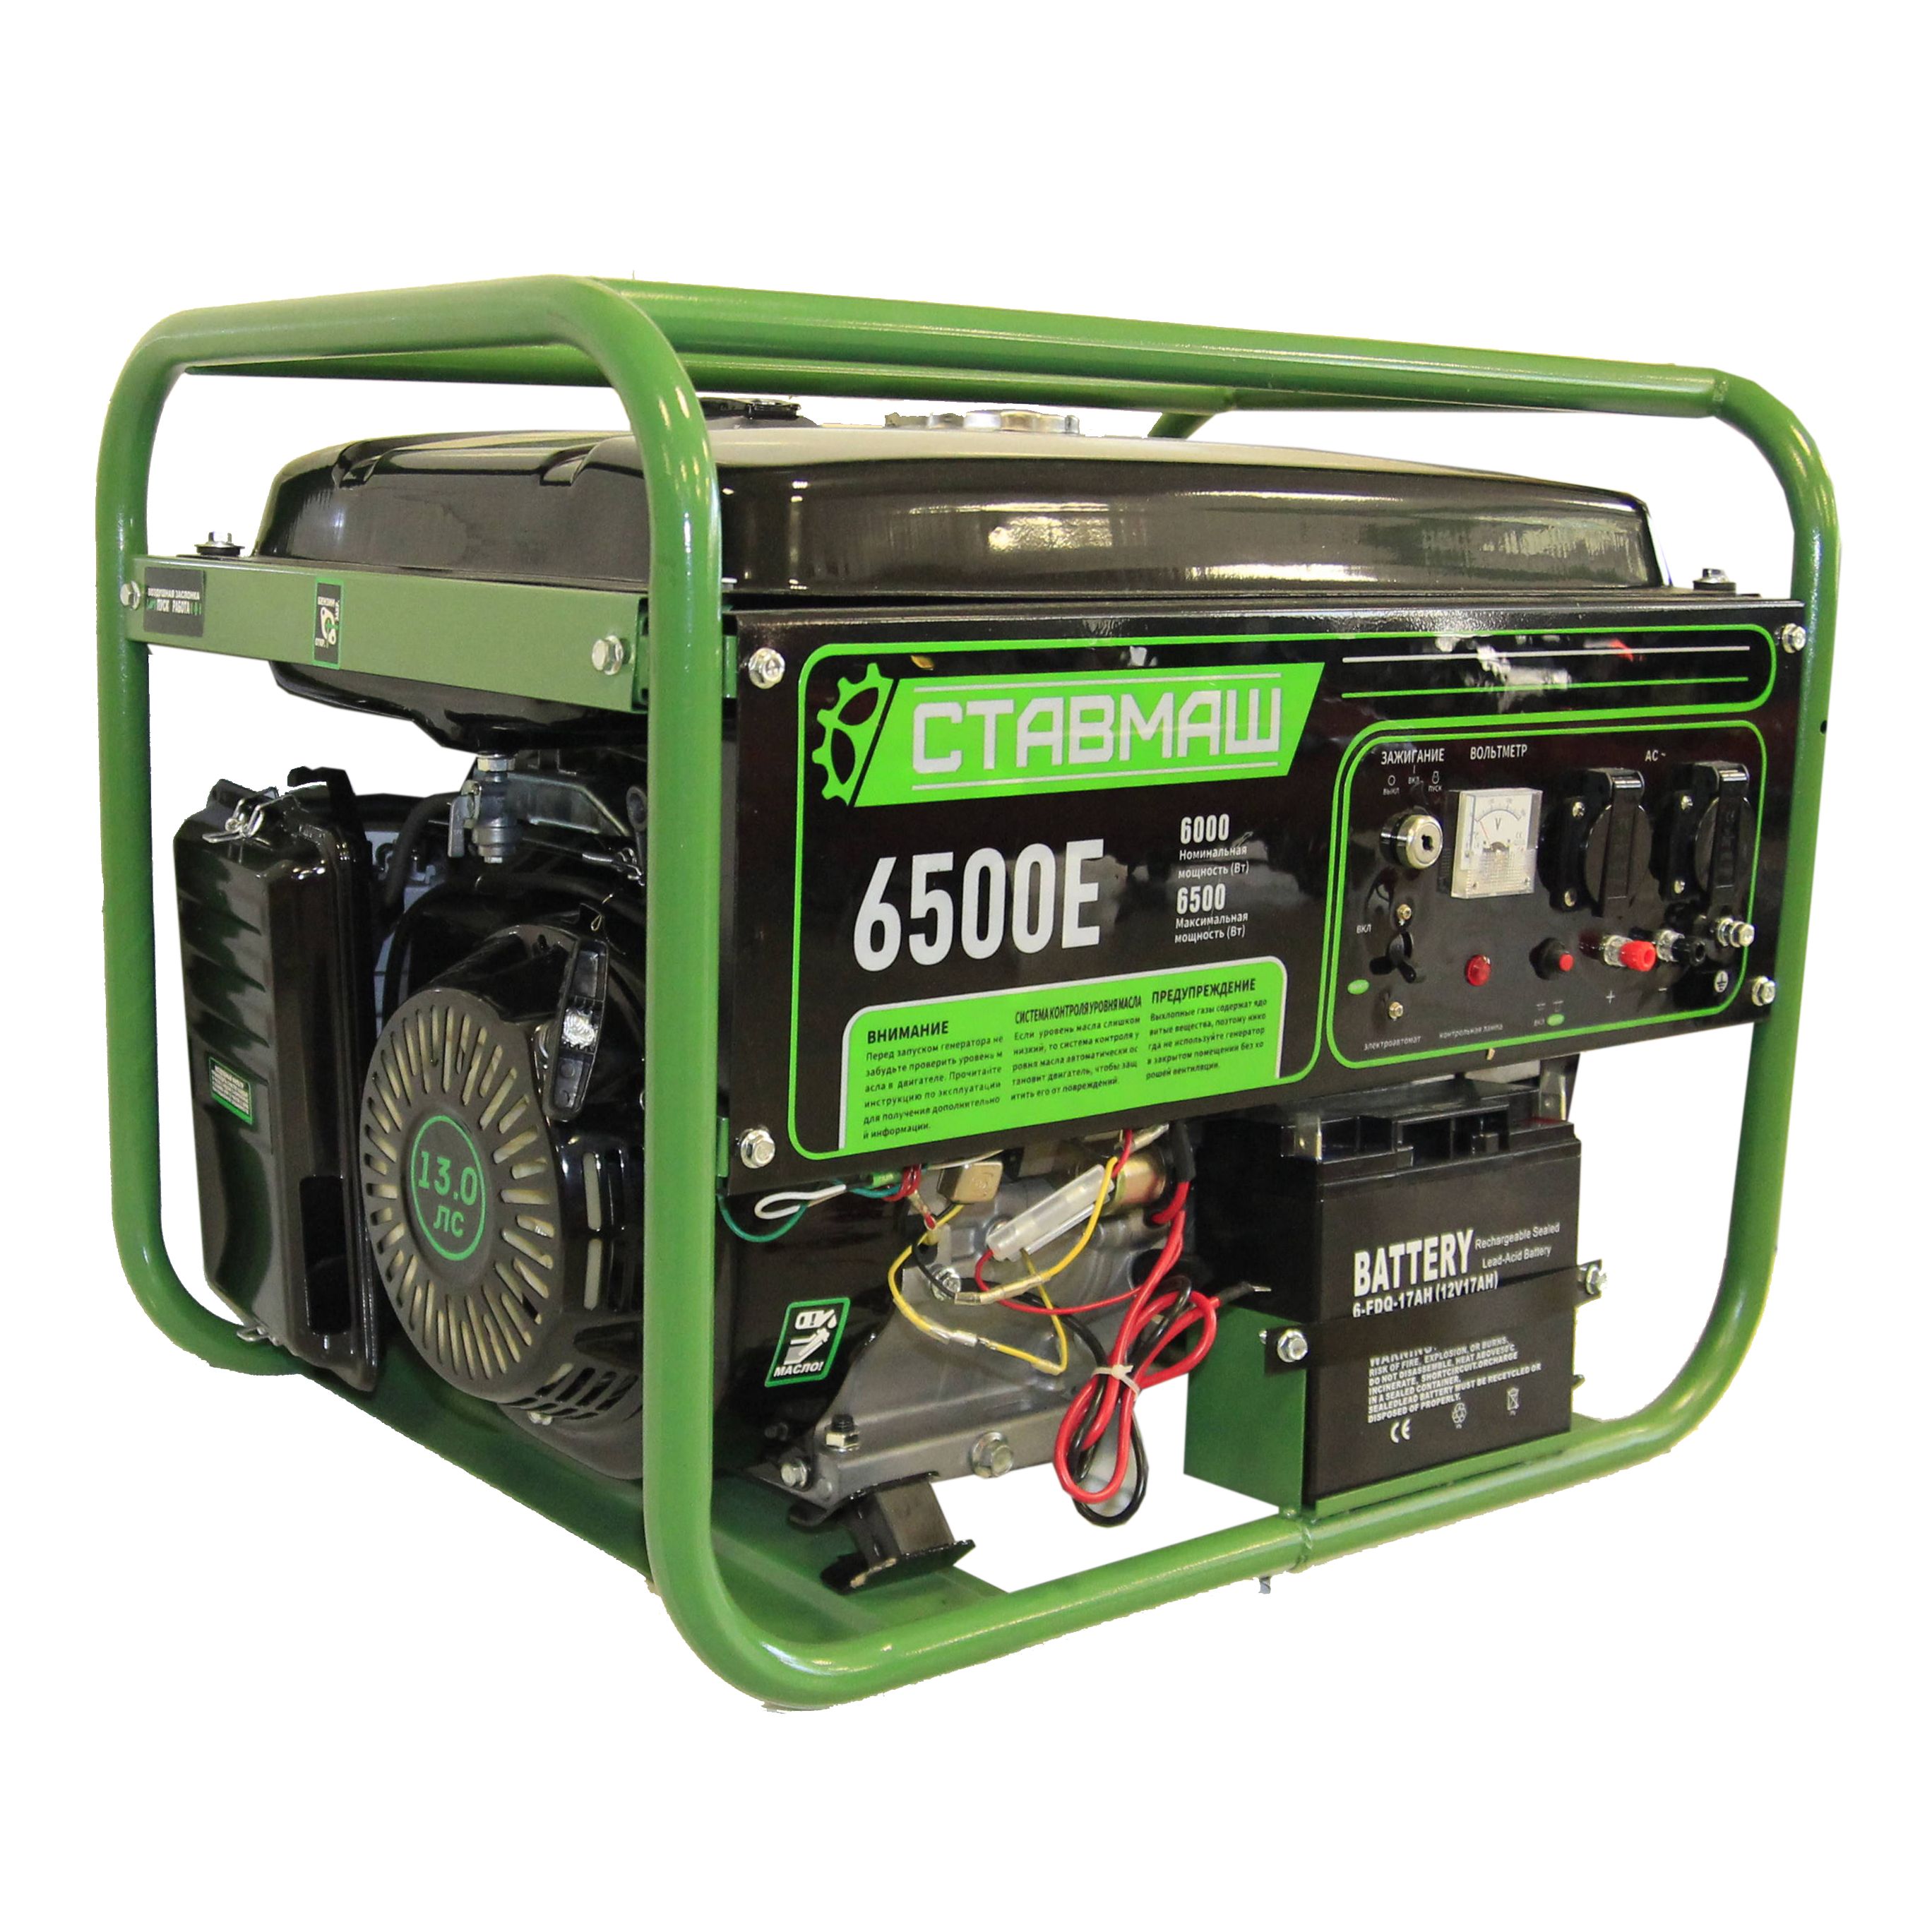  генератор Ставмаш 6500 Е, цена, характеристики, отзывы